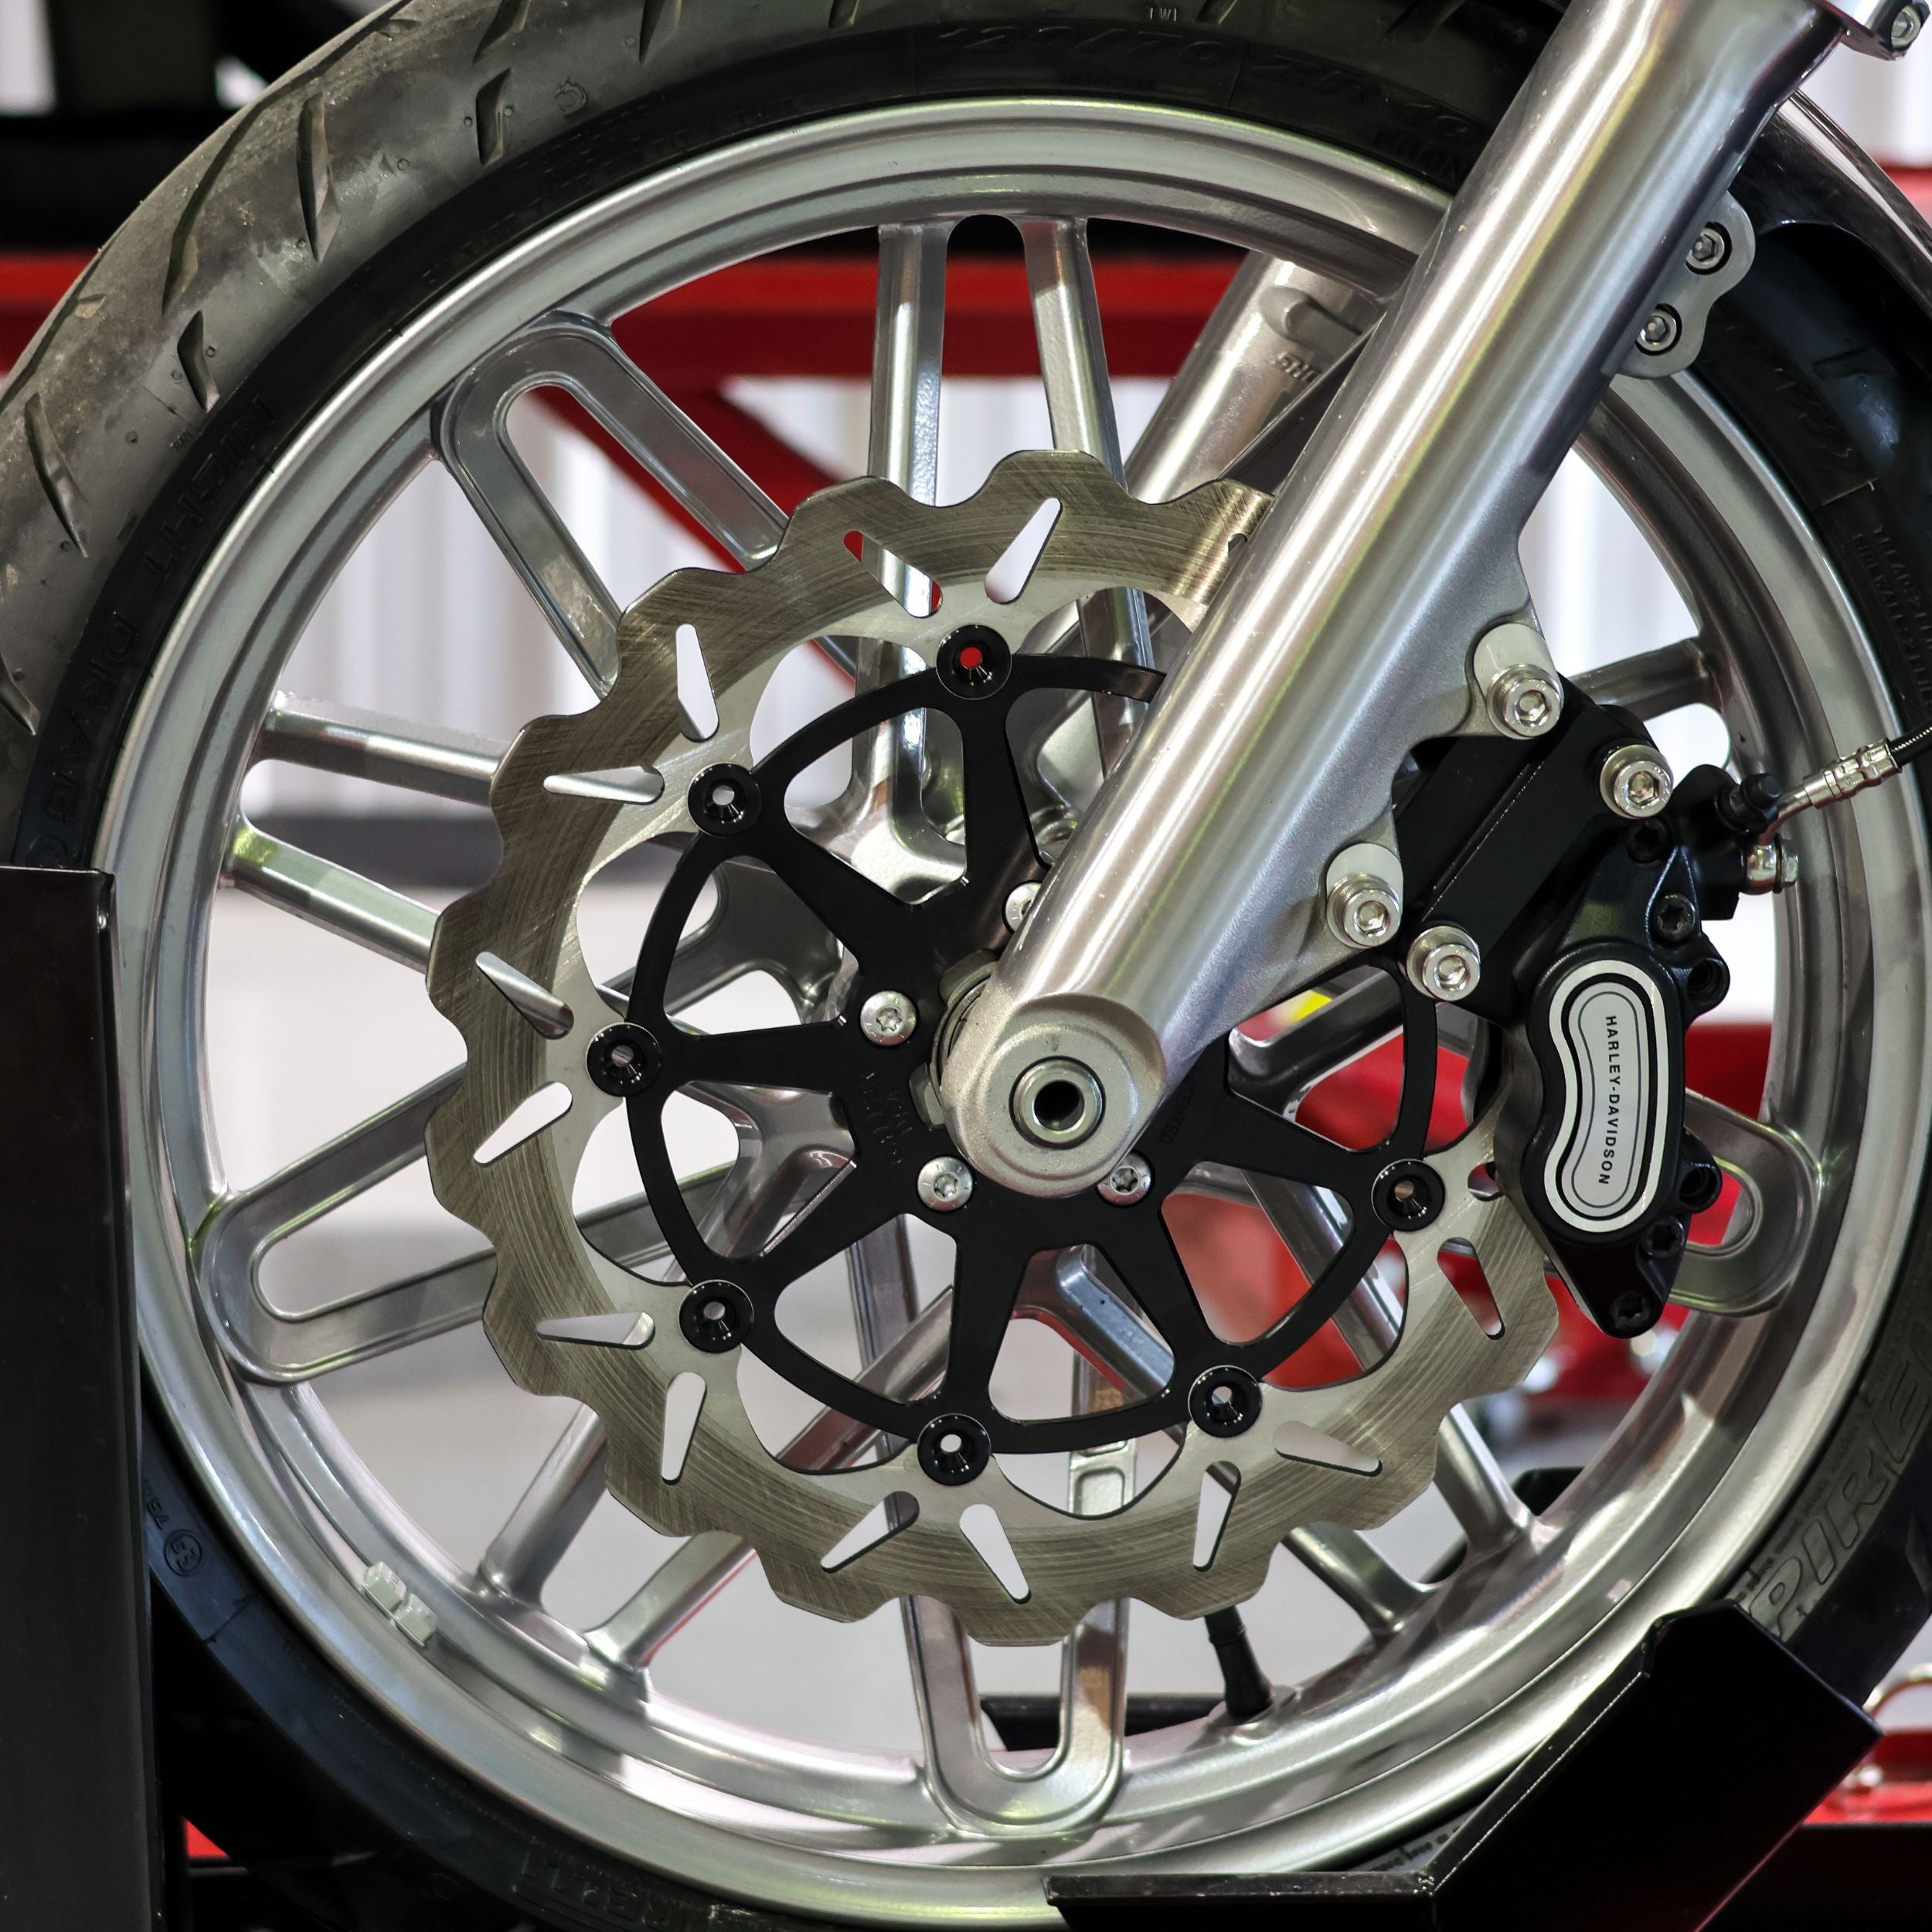 Harley Davidson Softail Big Brake Galfer Rotor